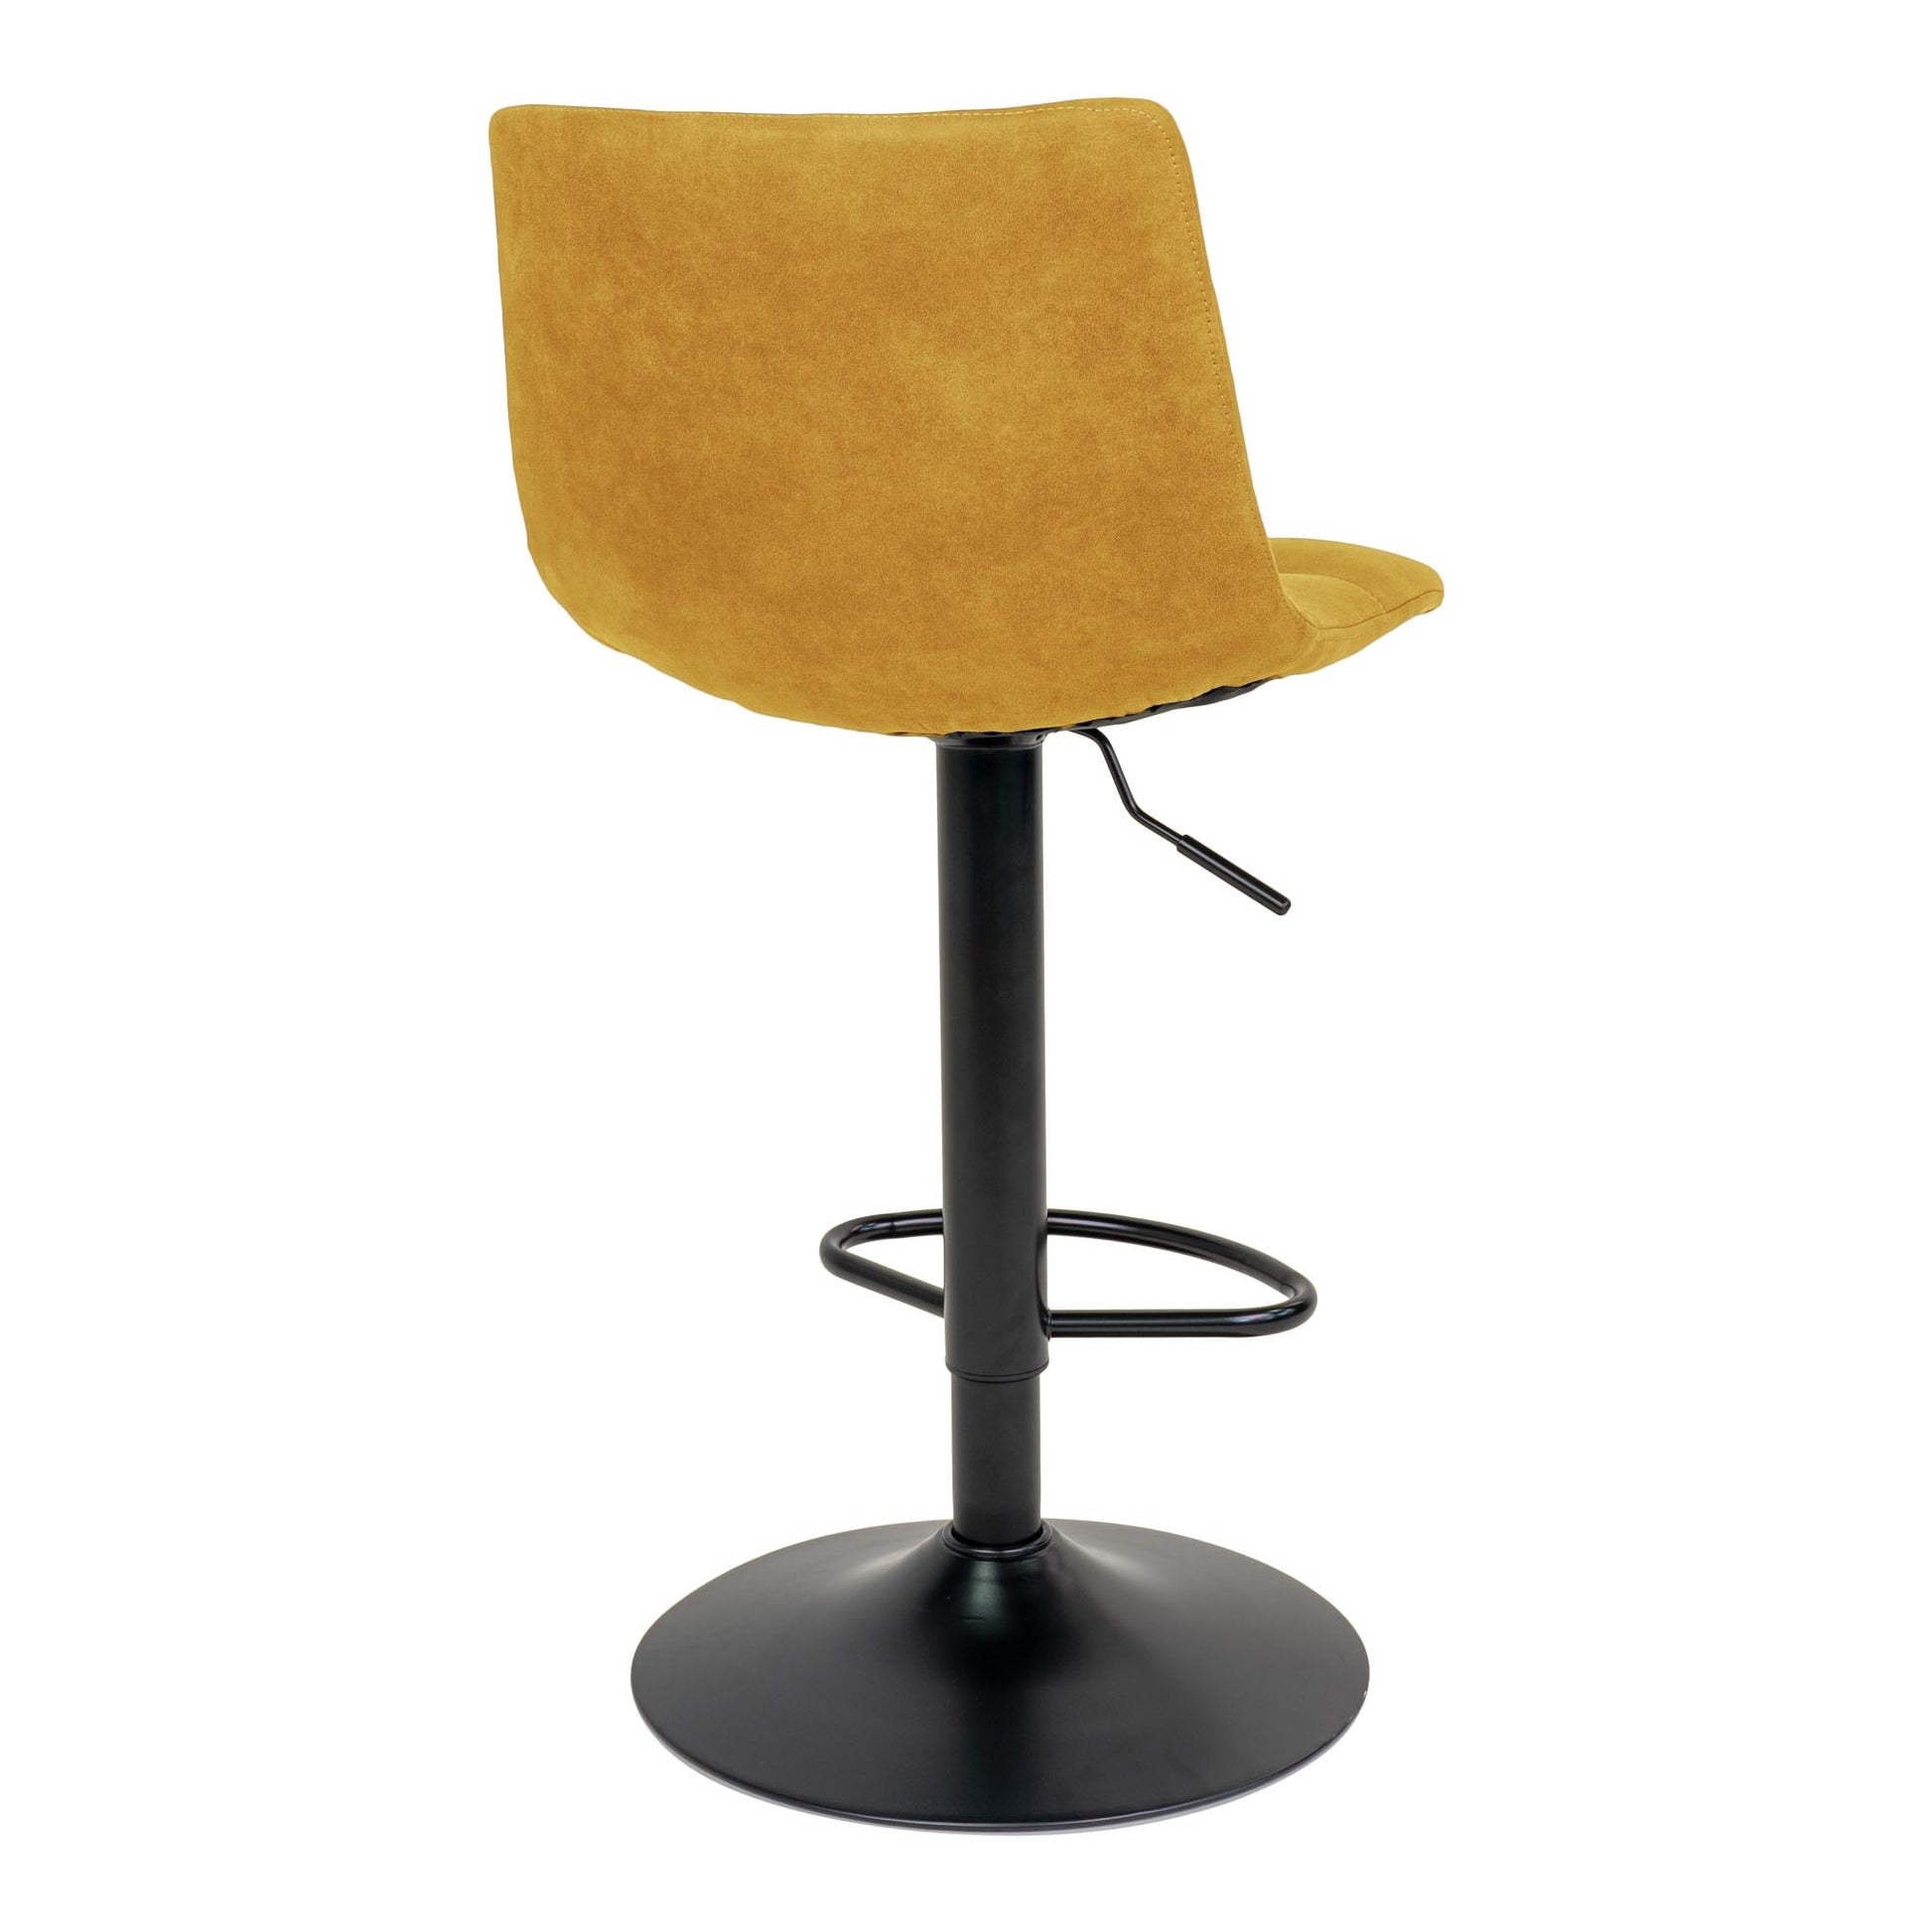 Middelfart Bar Chair - Barstoel in mosterdgeel met zwarte poten - set van 2-Stoel-House Nordic-middelfart-bar-chair-bar-chair-in-mustard-yellow-with-black-legs-5-barstoel, hoge stoel, MIN2, stoel-Barstoel in mosterdgeel met zwarte poten Materiaal Polyester fluweel, staal Kleur Mosterd Geel-5713917009404-1001303-Cerasus Homestyle